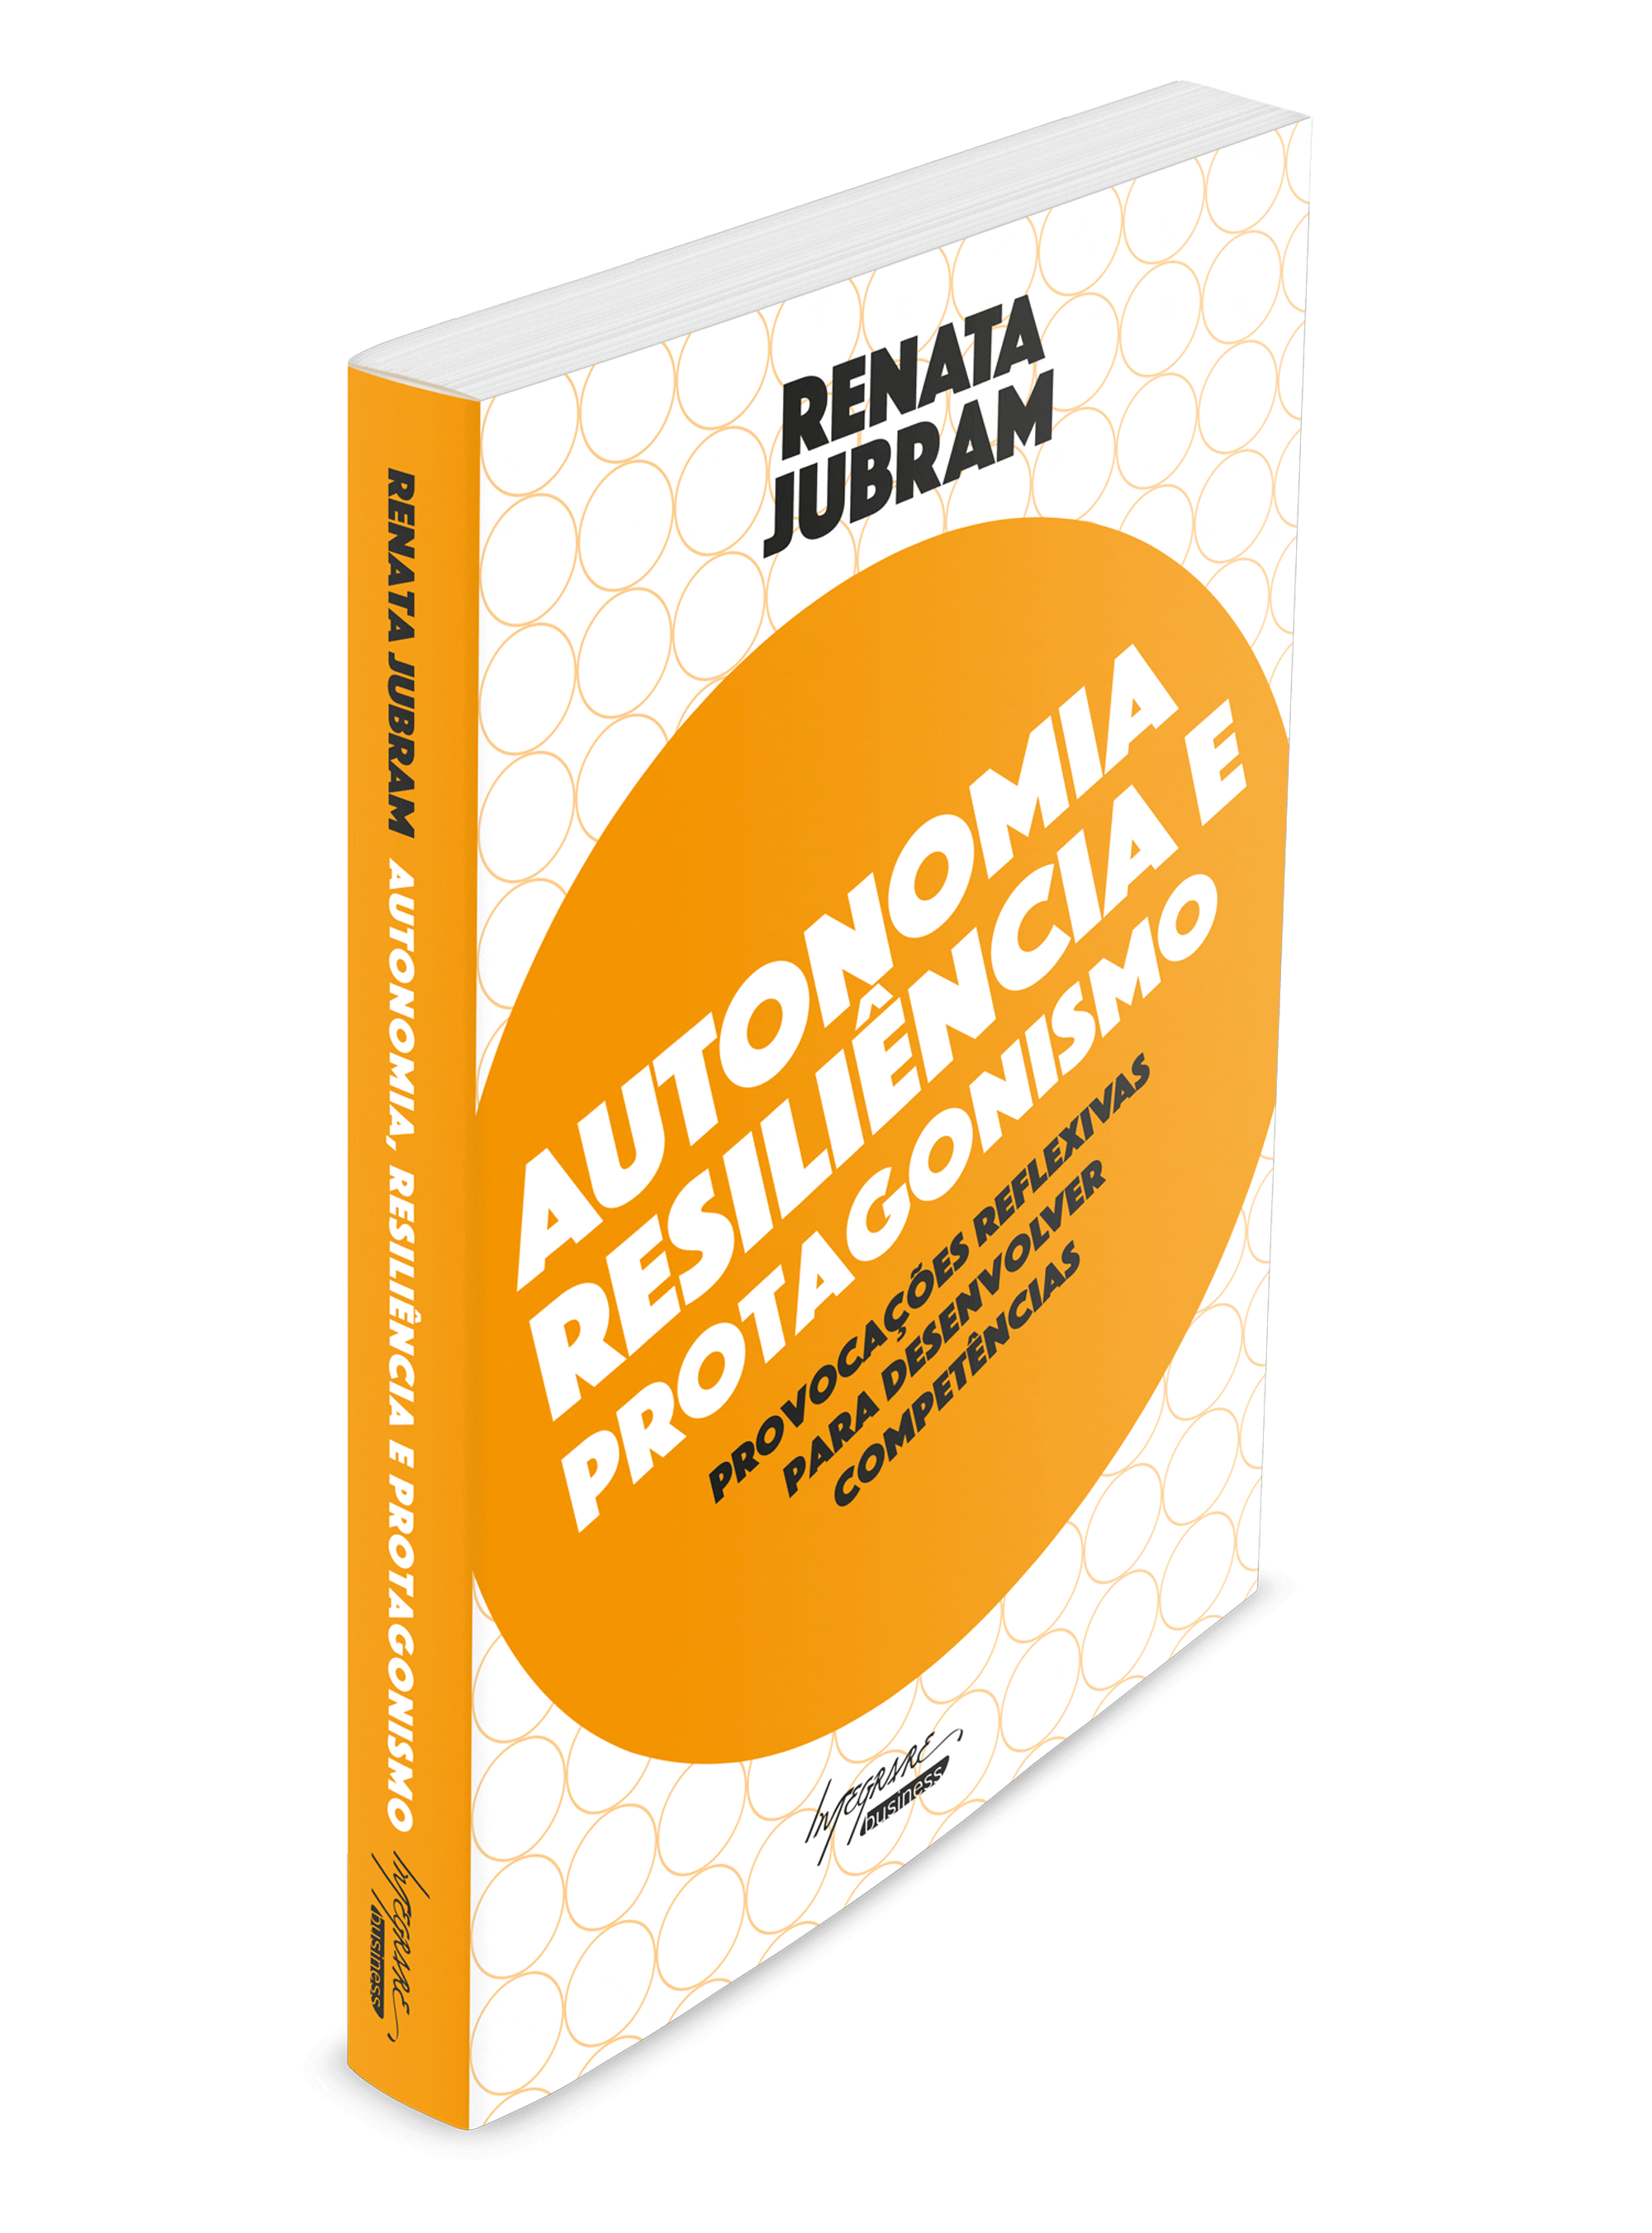 Capa do livro "Autonomia, Resiliência e Protagonismo" de Renata Jubram​